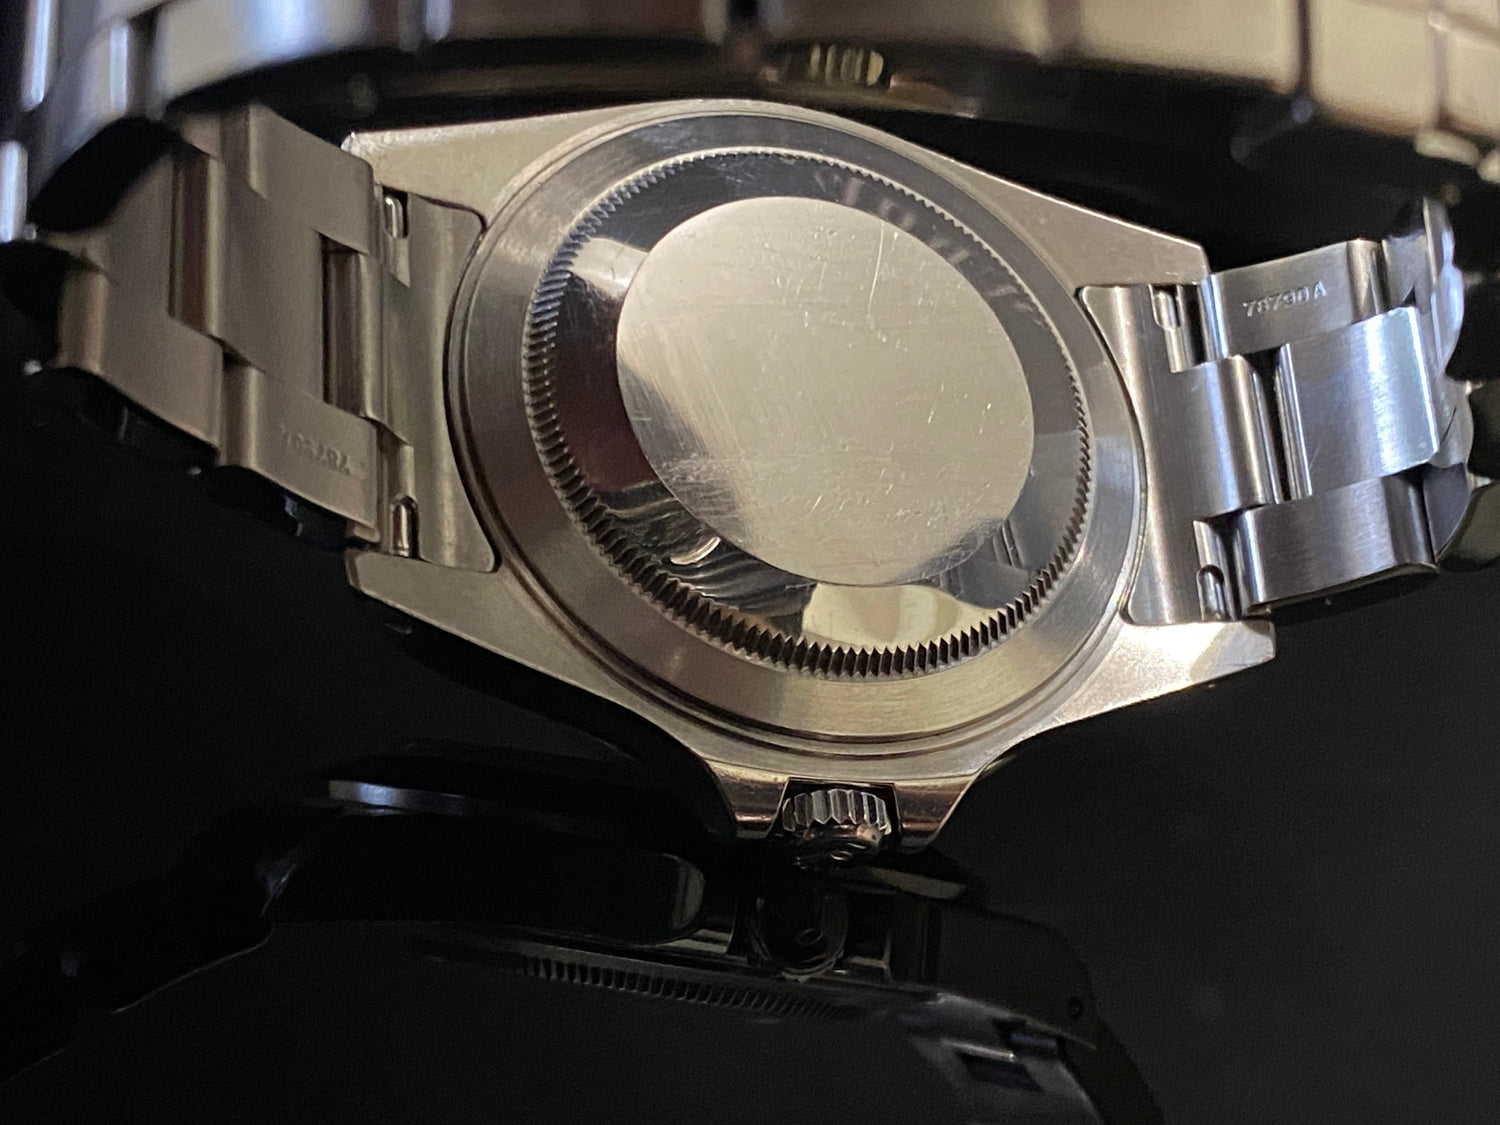 Rolex Explorer II 16570 - PM Vintage Watches - Rolex